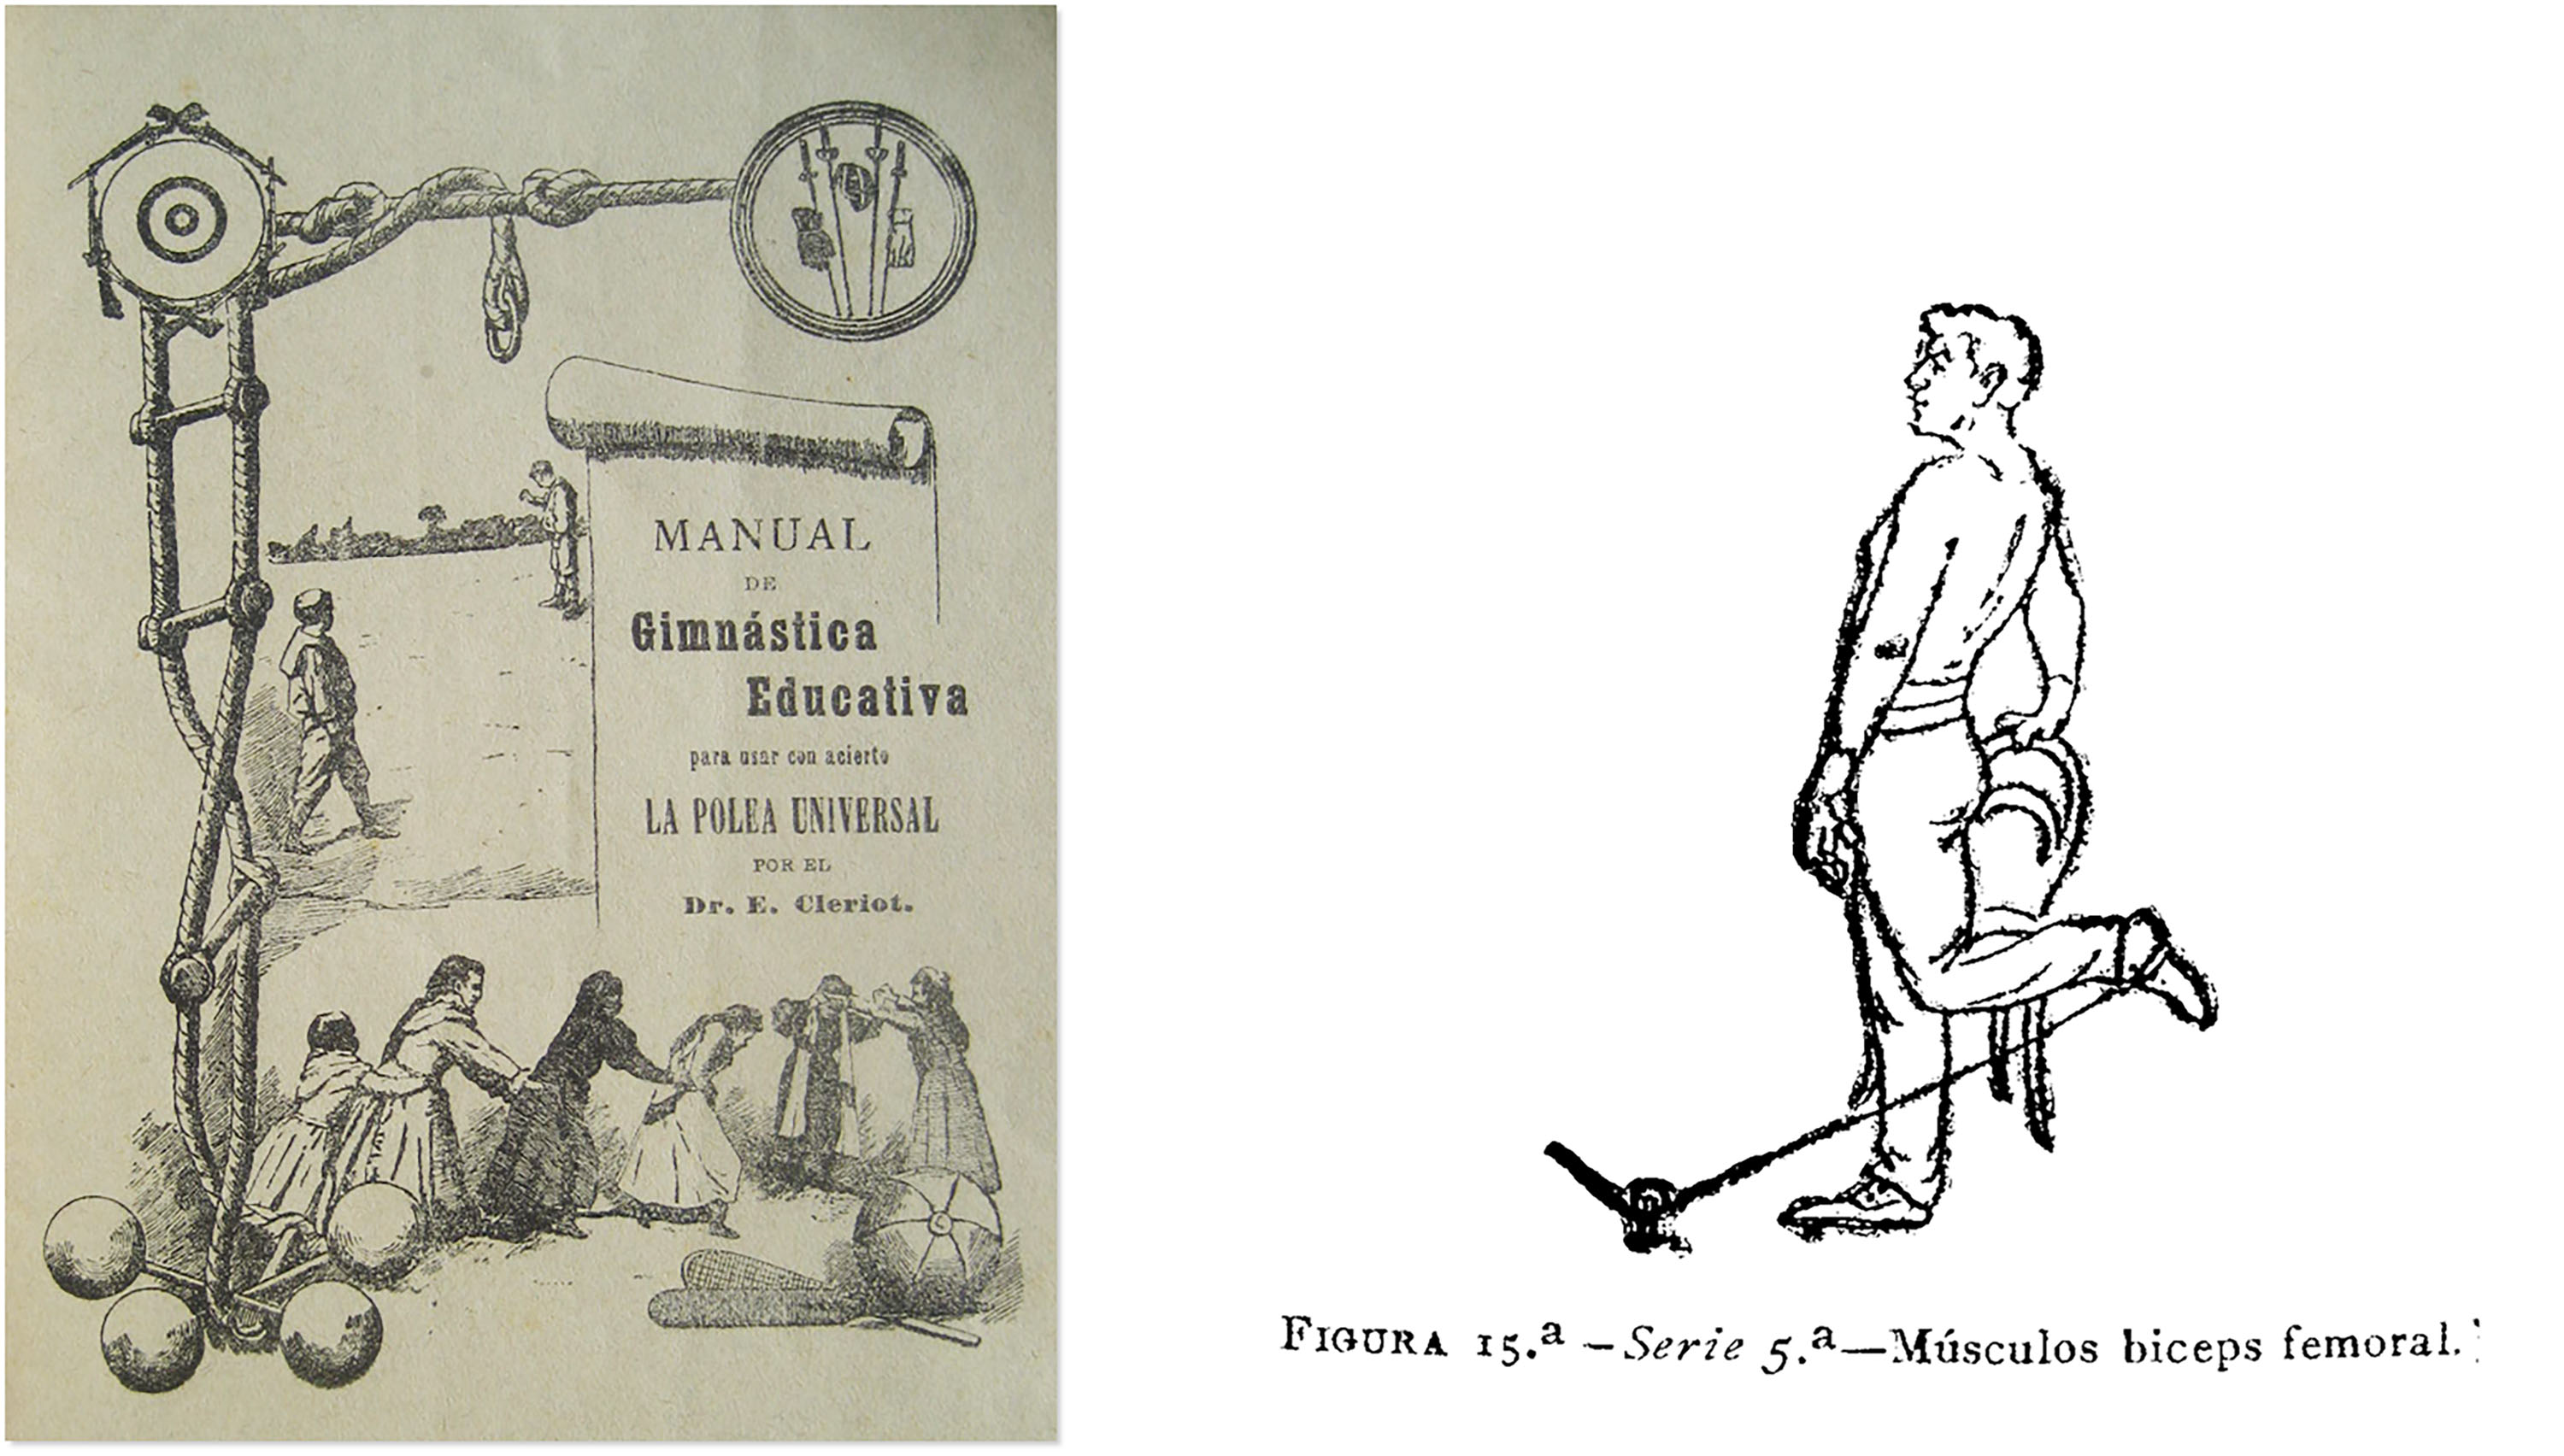 Portada y ejercicio del Manual de gimnástica higiénico-educativa: para usar con acierto la Polea Universal (Cleriot, 1900)